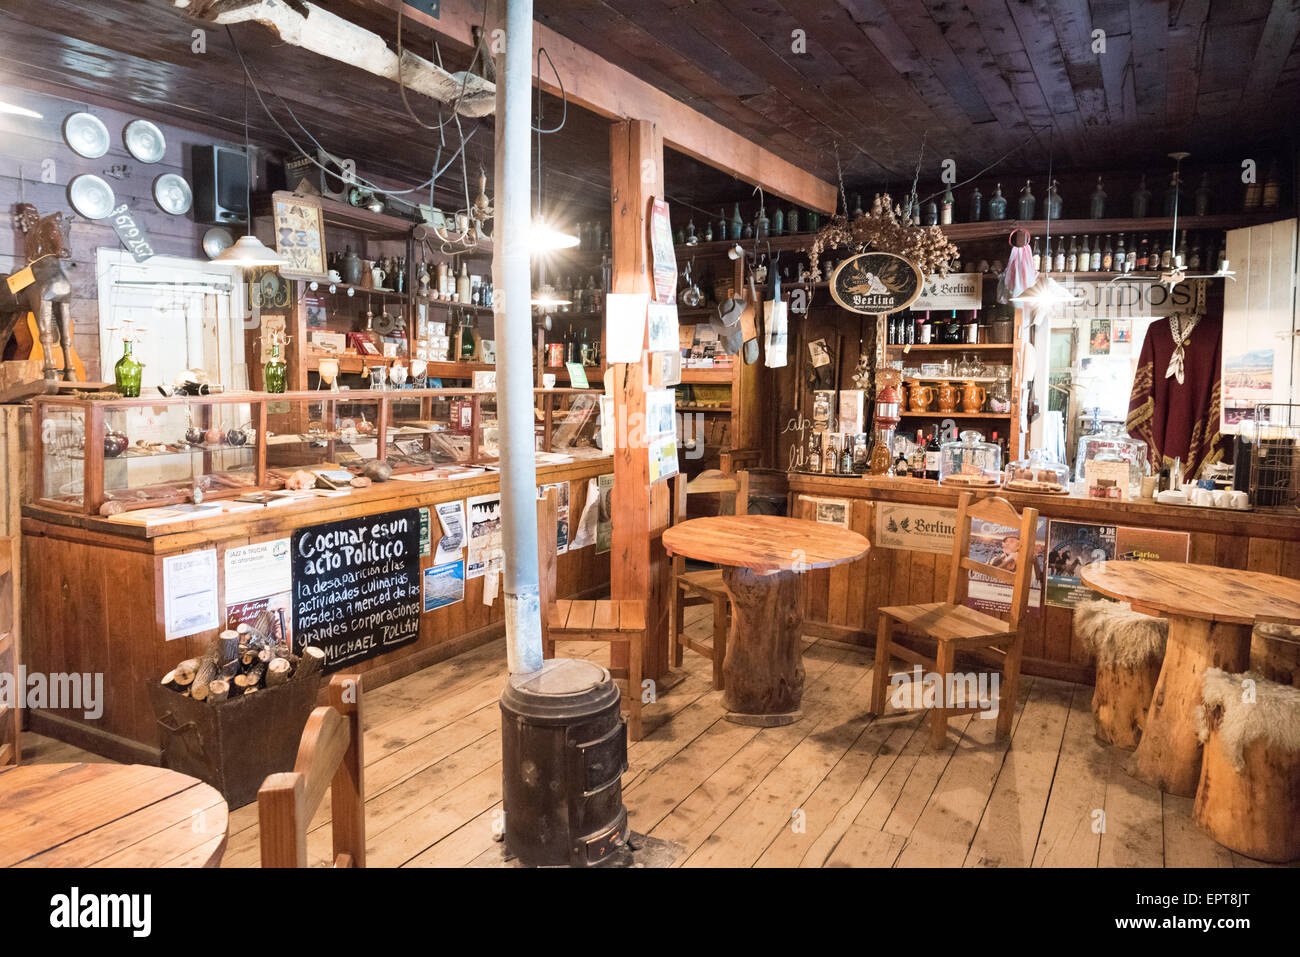 El Viejo Almacen del Foyel - Restaurant und Museum der Mapuche Leben - auf La Ruta 40 in der Nähe von El Bolson, Provinz Neuquen, Argentinien Stockfoto